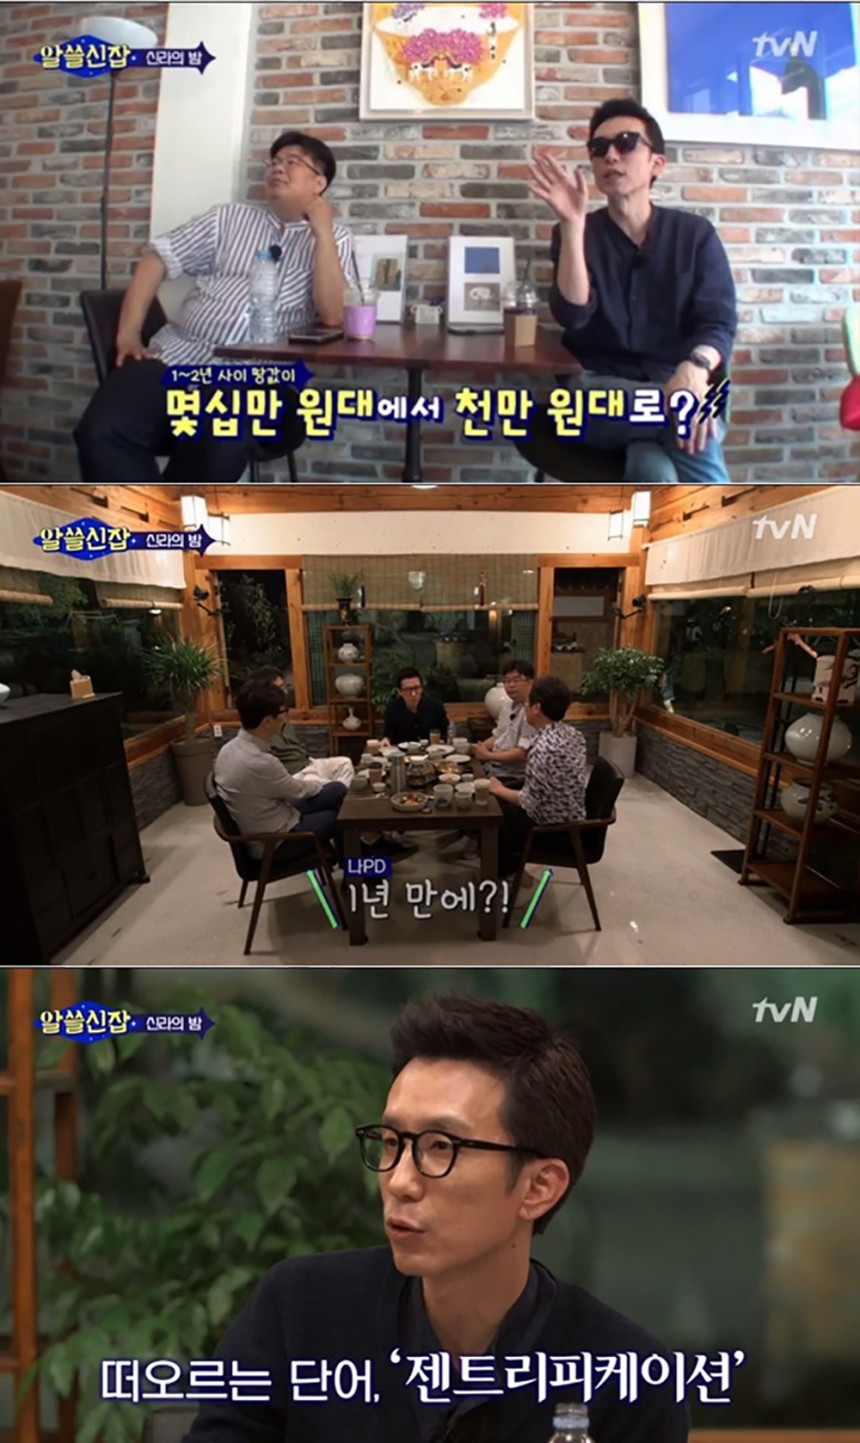 ‘알쓸신잡’ 방송장면/tvN